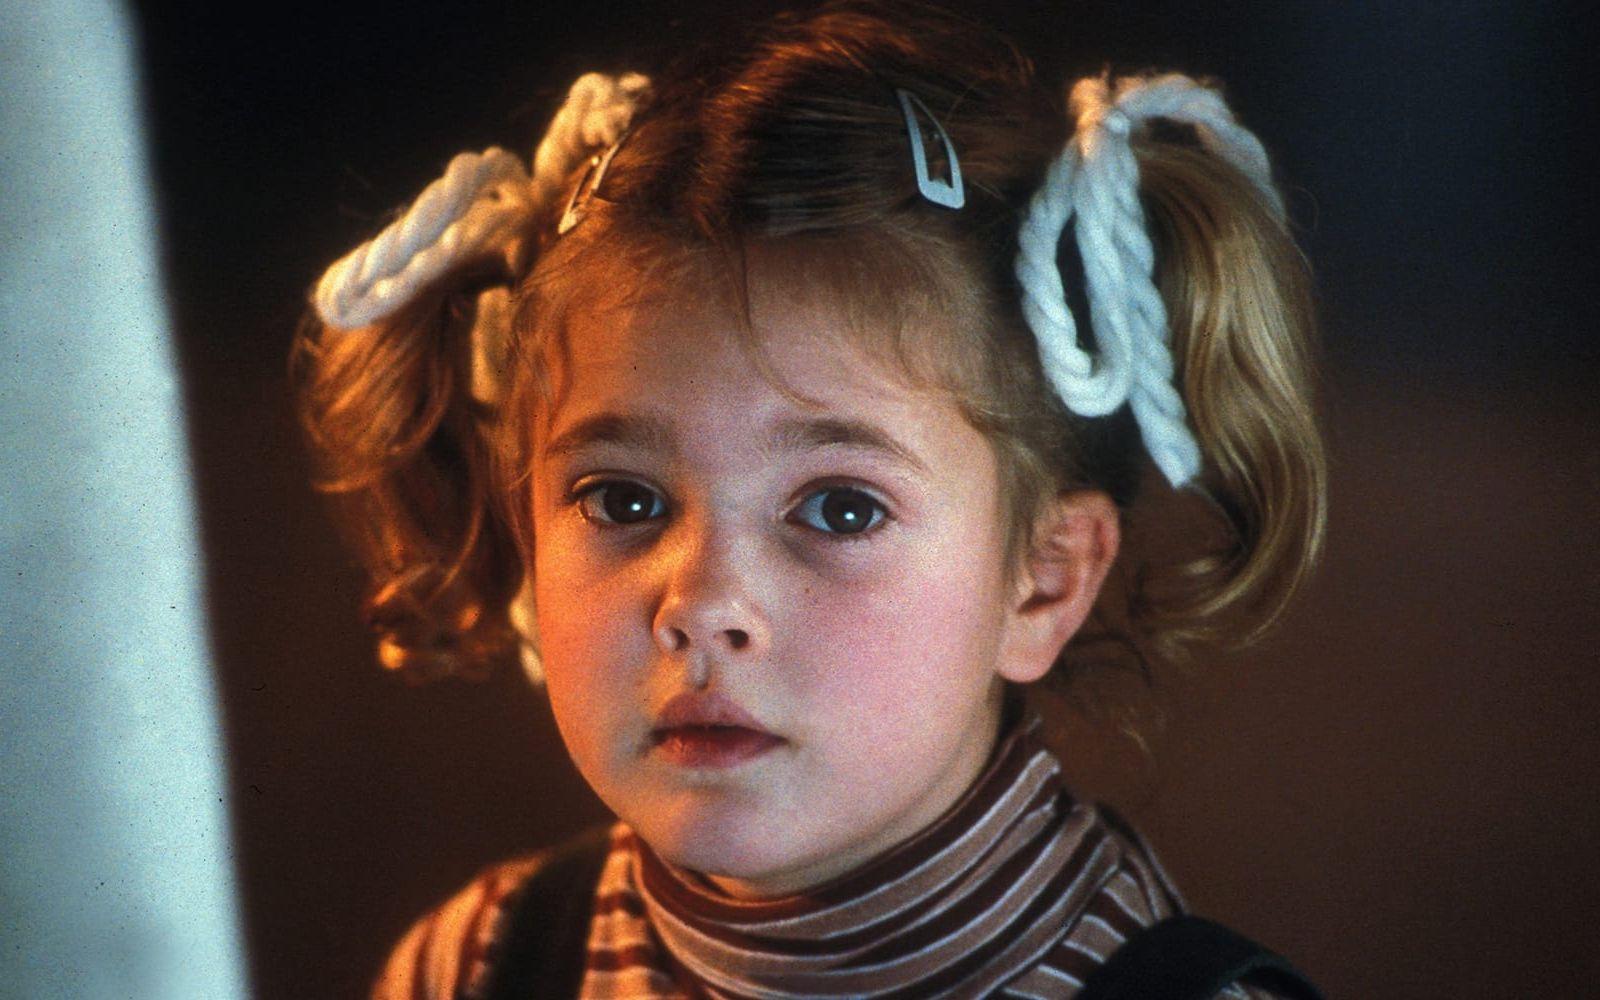 <strong>DÅ:</strong> Drew Barrymore var sju år hon spelade Gertie i E.T. Spielberg gav henne rollen efter att han imponerats av hennes fantasifullhet. Foto: Stella Pictures